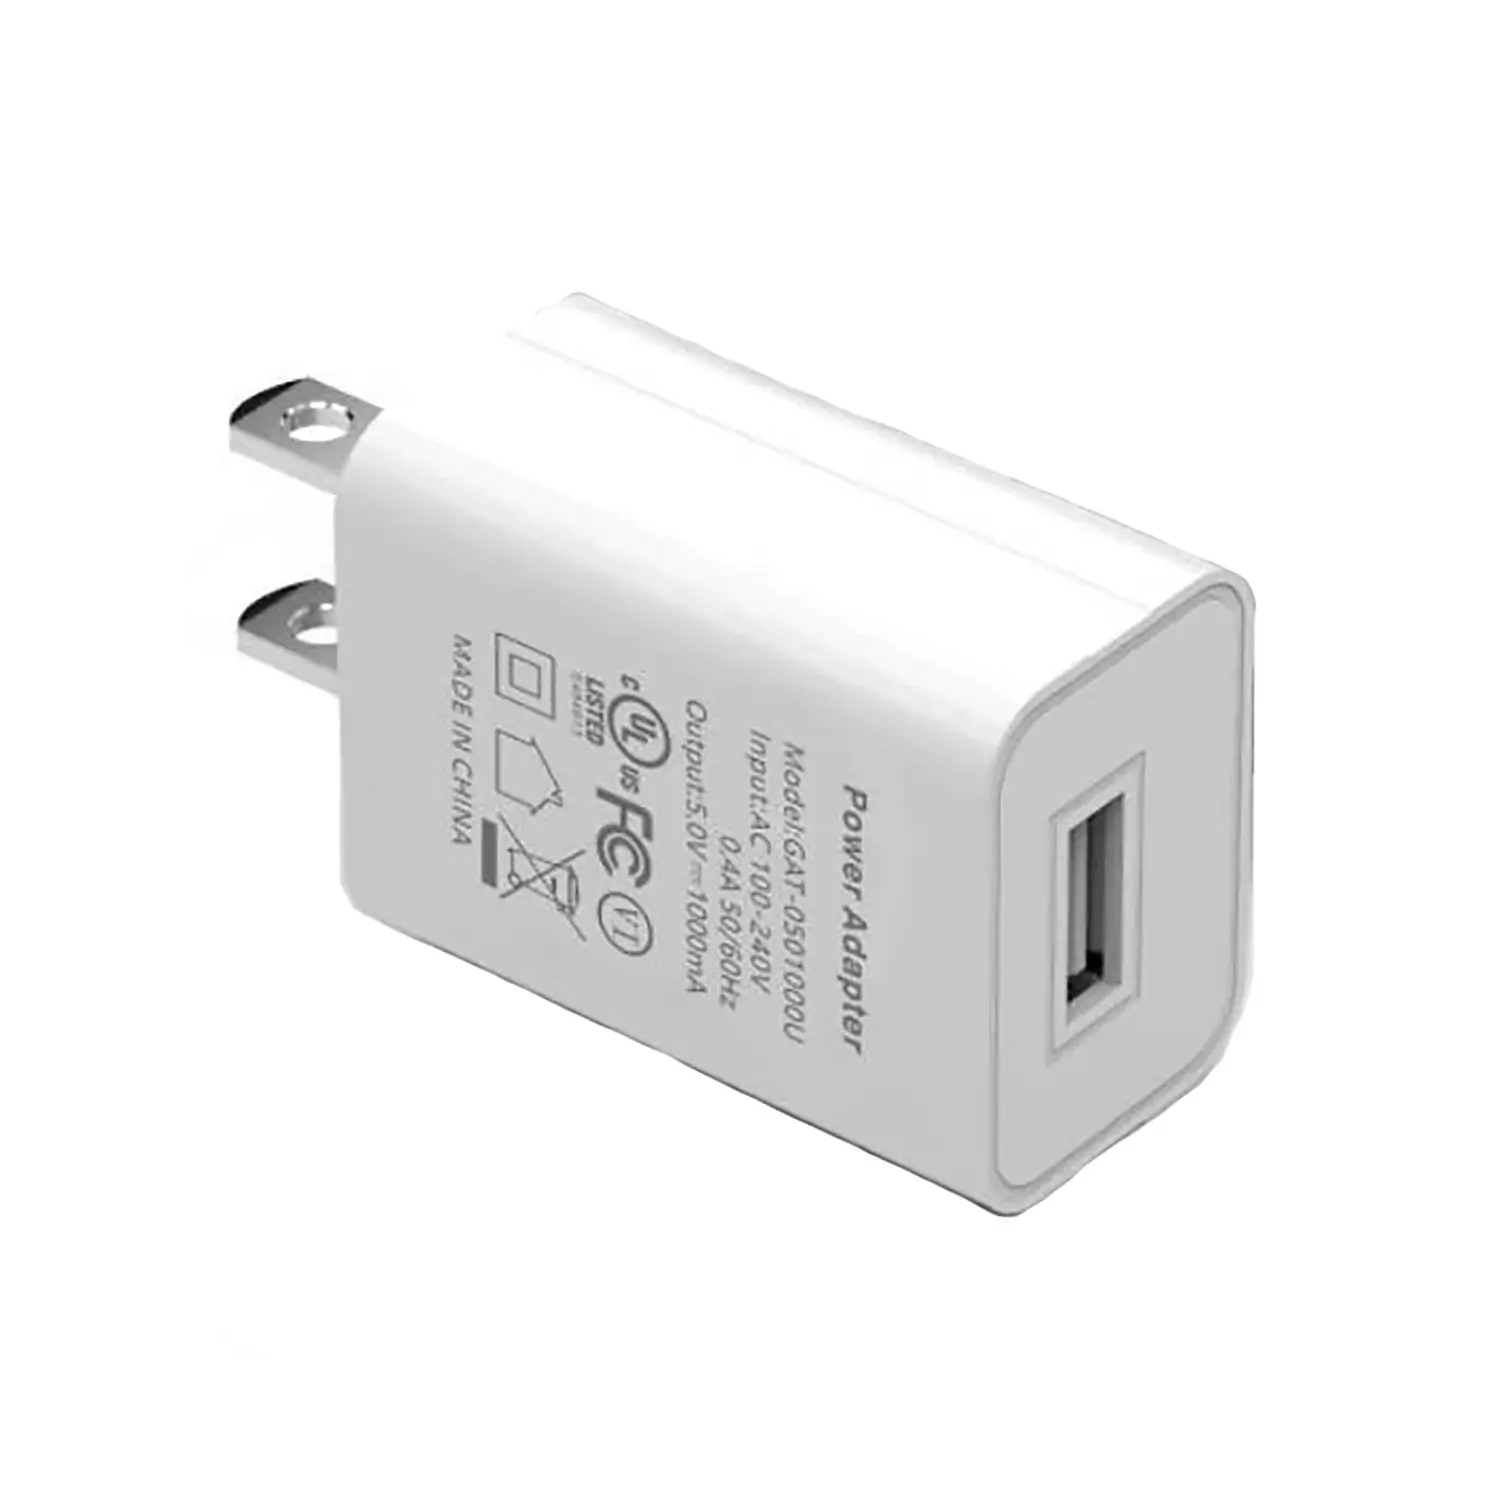 2X Chargeur Secteur - Adaptateur USB Universel Mural (5V - 1A